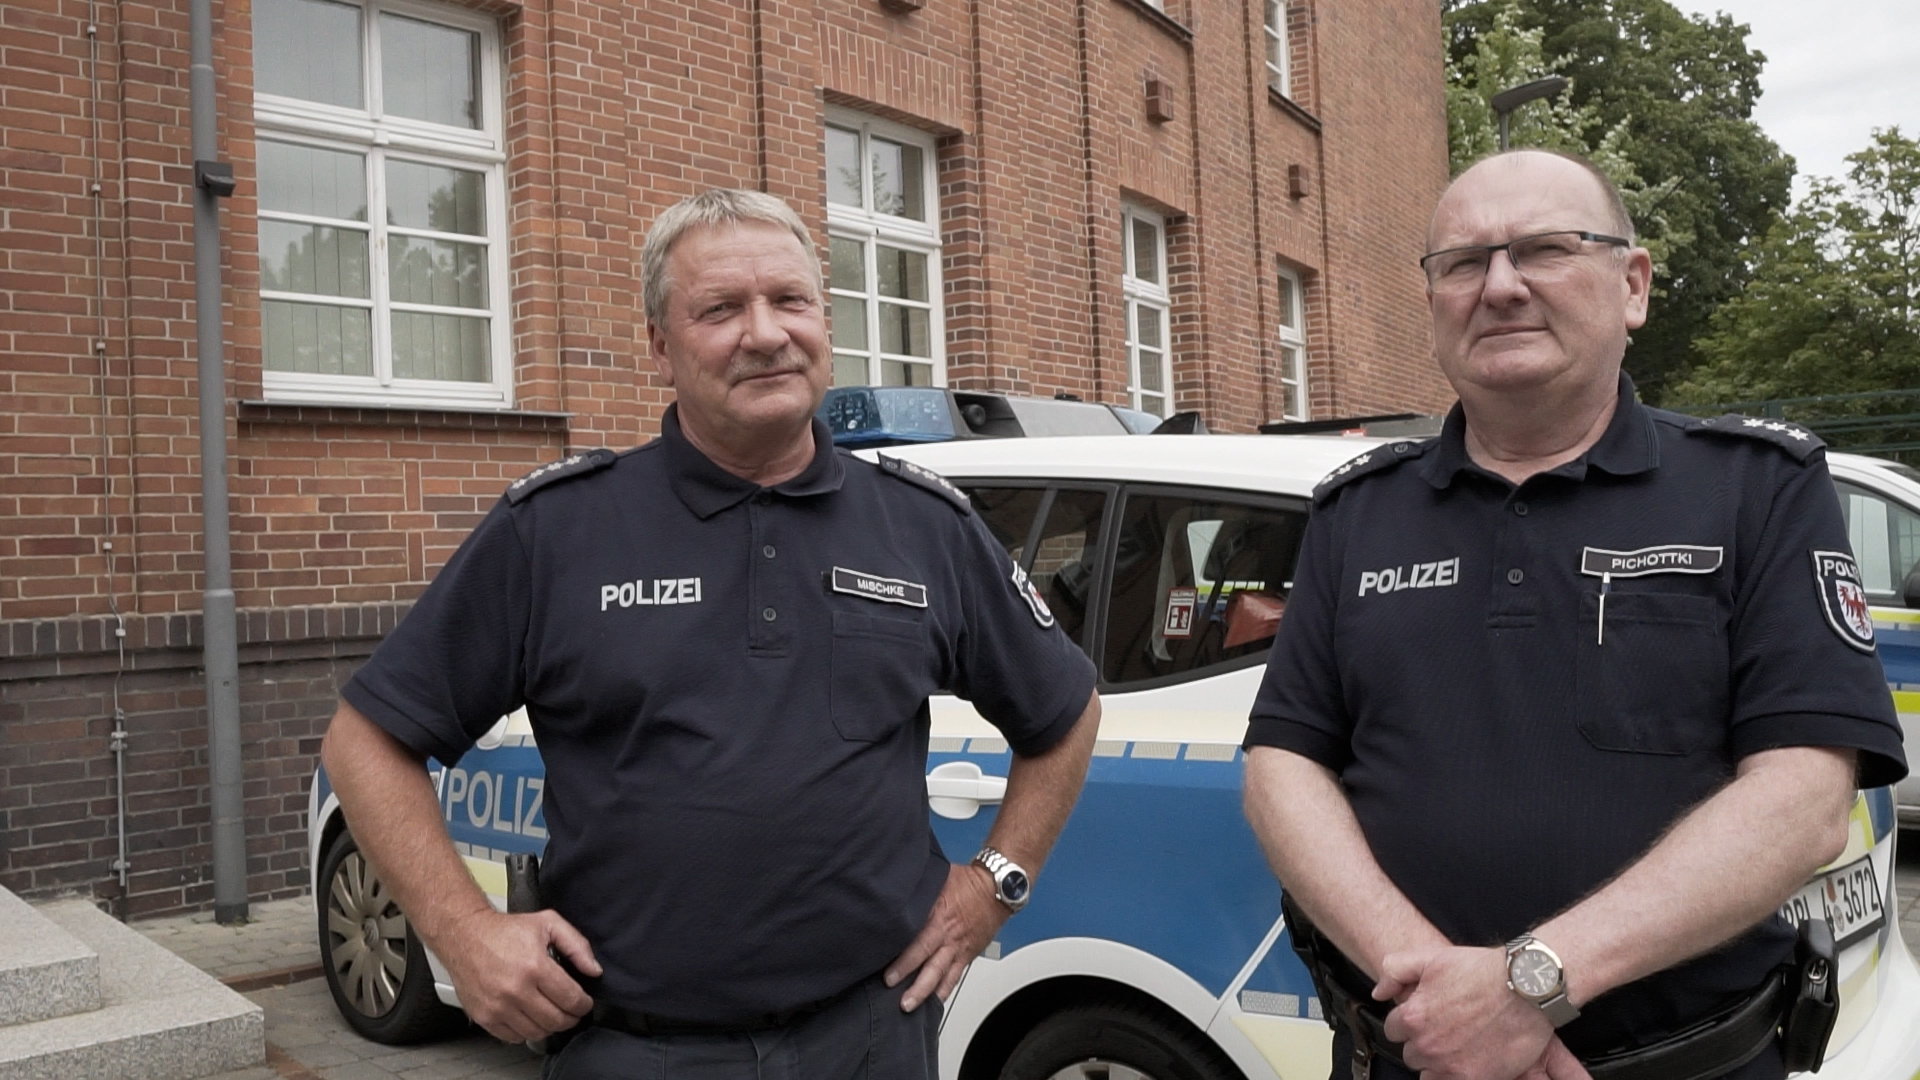 Bild: Teamfoto von Herrn Mischke und Herrn Pichottki vor dem Polizeigebäude - im Hintergrund ein Polizeifahrzeug